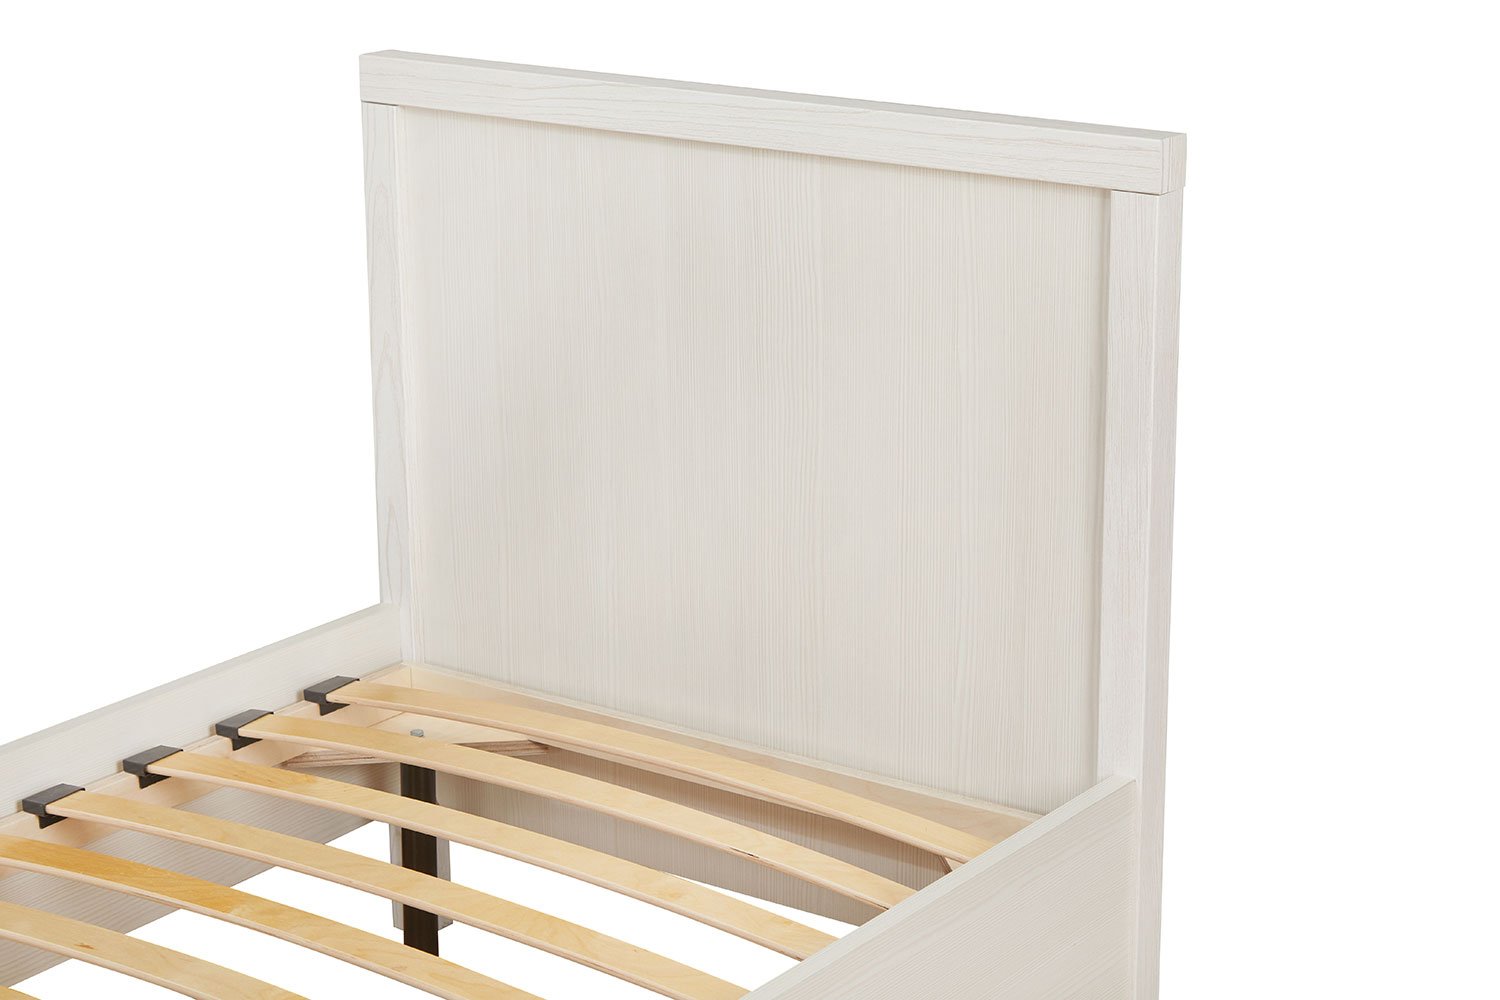 Кровать без подъёмного механизма Hoff Bauhaus